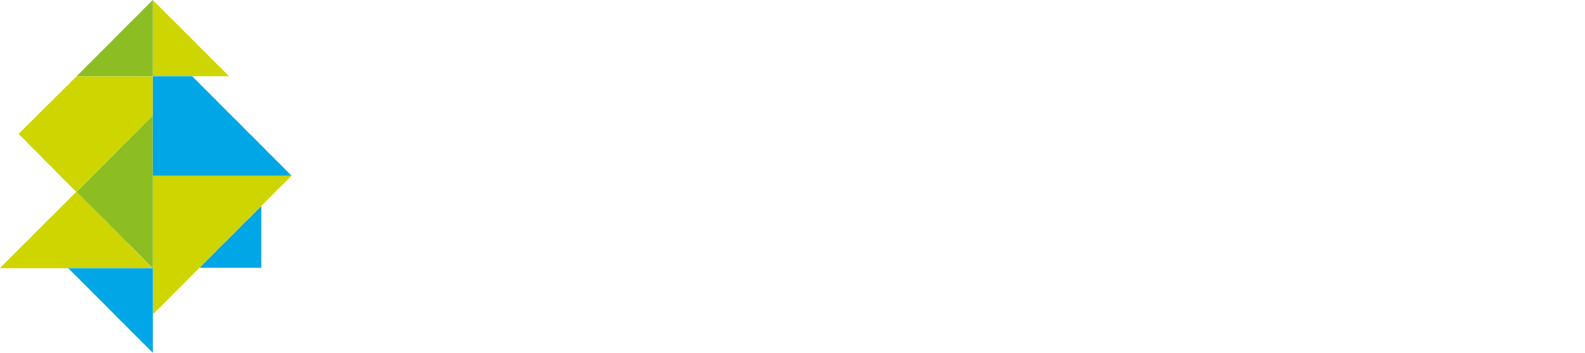 Constellium
 Logo groß für dunkle Hintergründe (transparentes PNG)